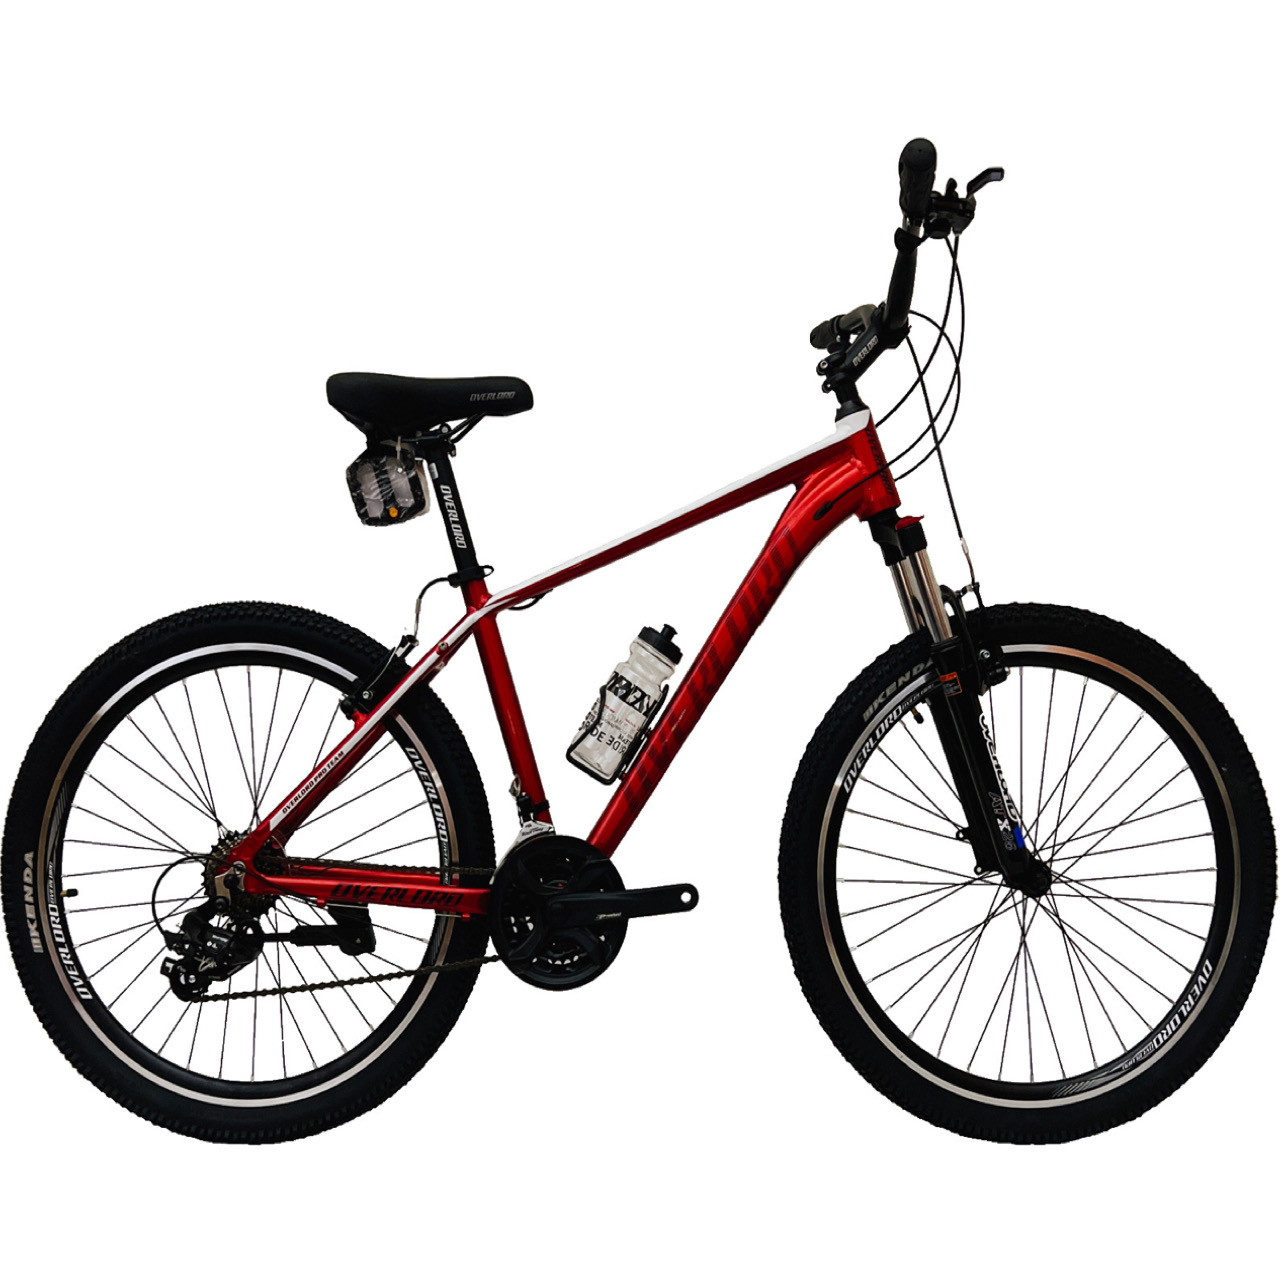 نکته خرید - قیمت روز دوچرخه کوهستان اورلورد مدل PANAMERA SE1.1-V سایز 26 خرید